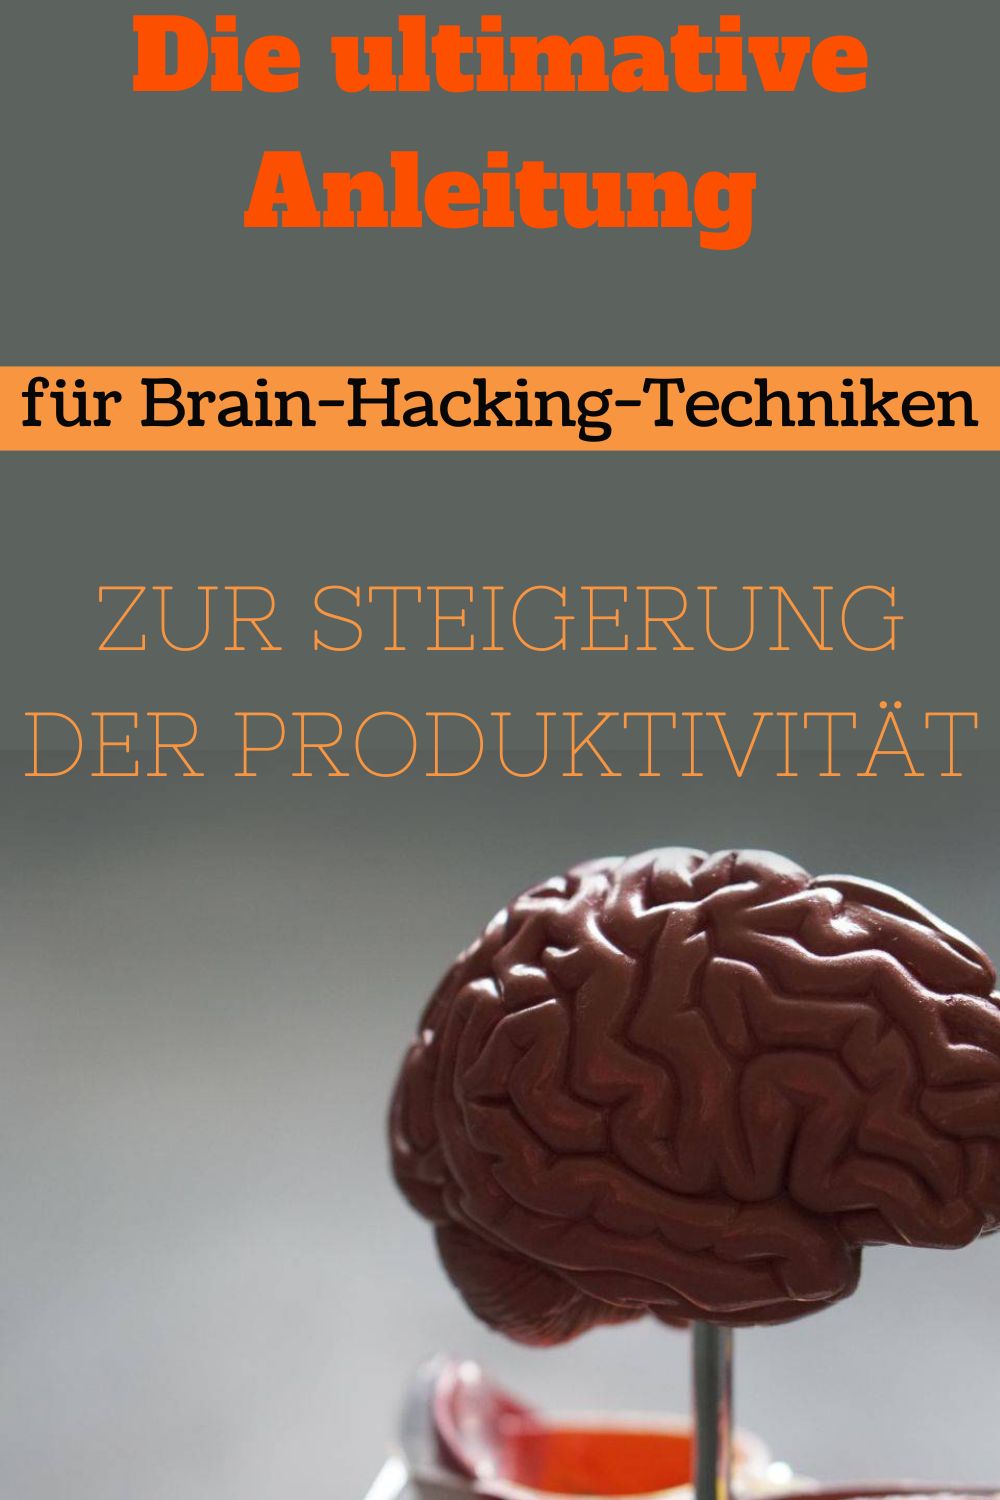 Die-ultimative-Anleitung-fuer-Brain-Hacking-Techniken-zur-Steigerung-der-Produktivitaet